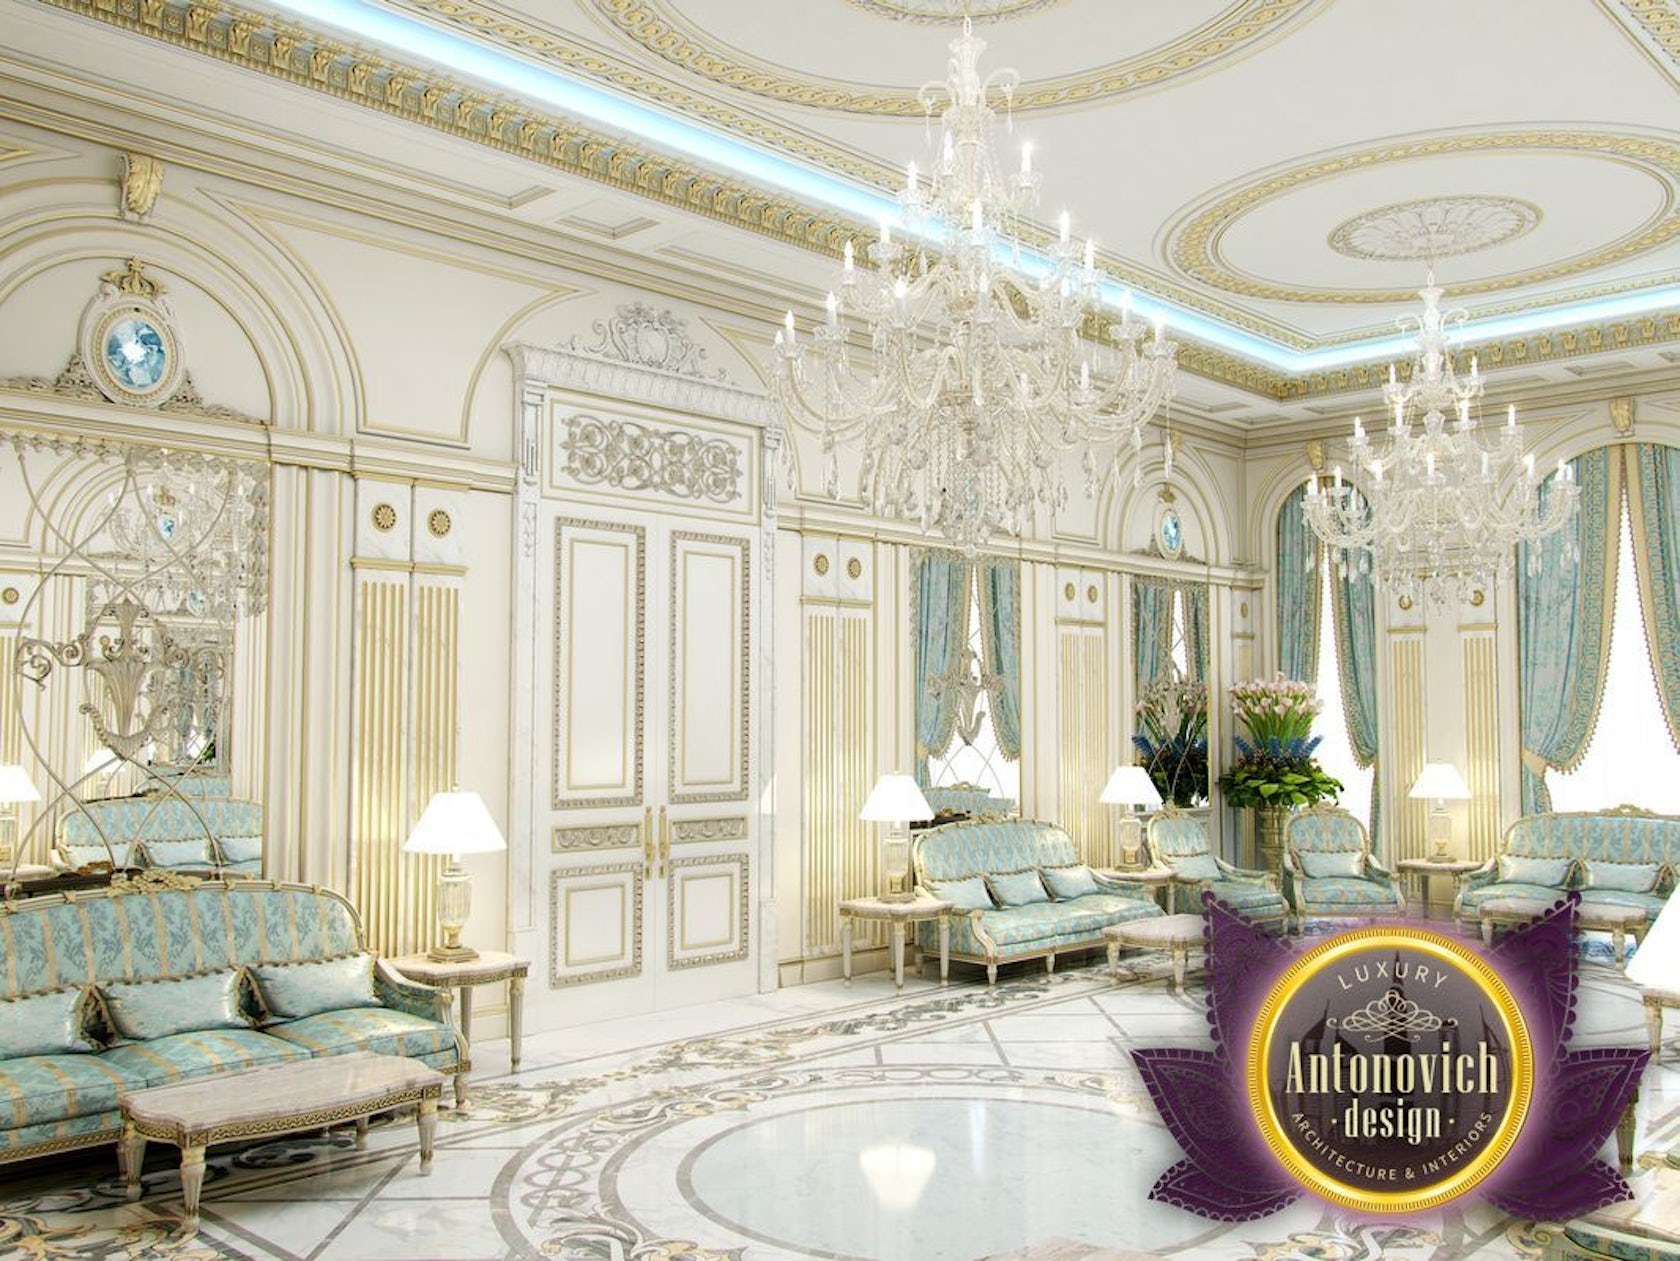 Interior Designs By Luxury Antonovich Design By Luxury Antonovich